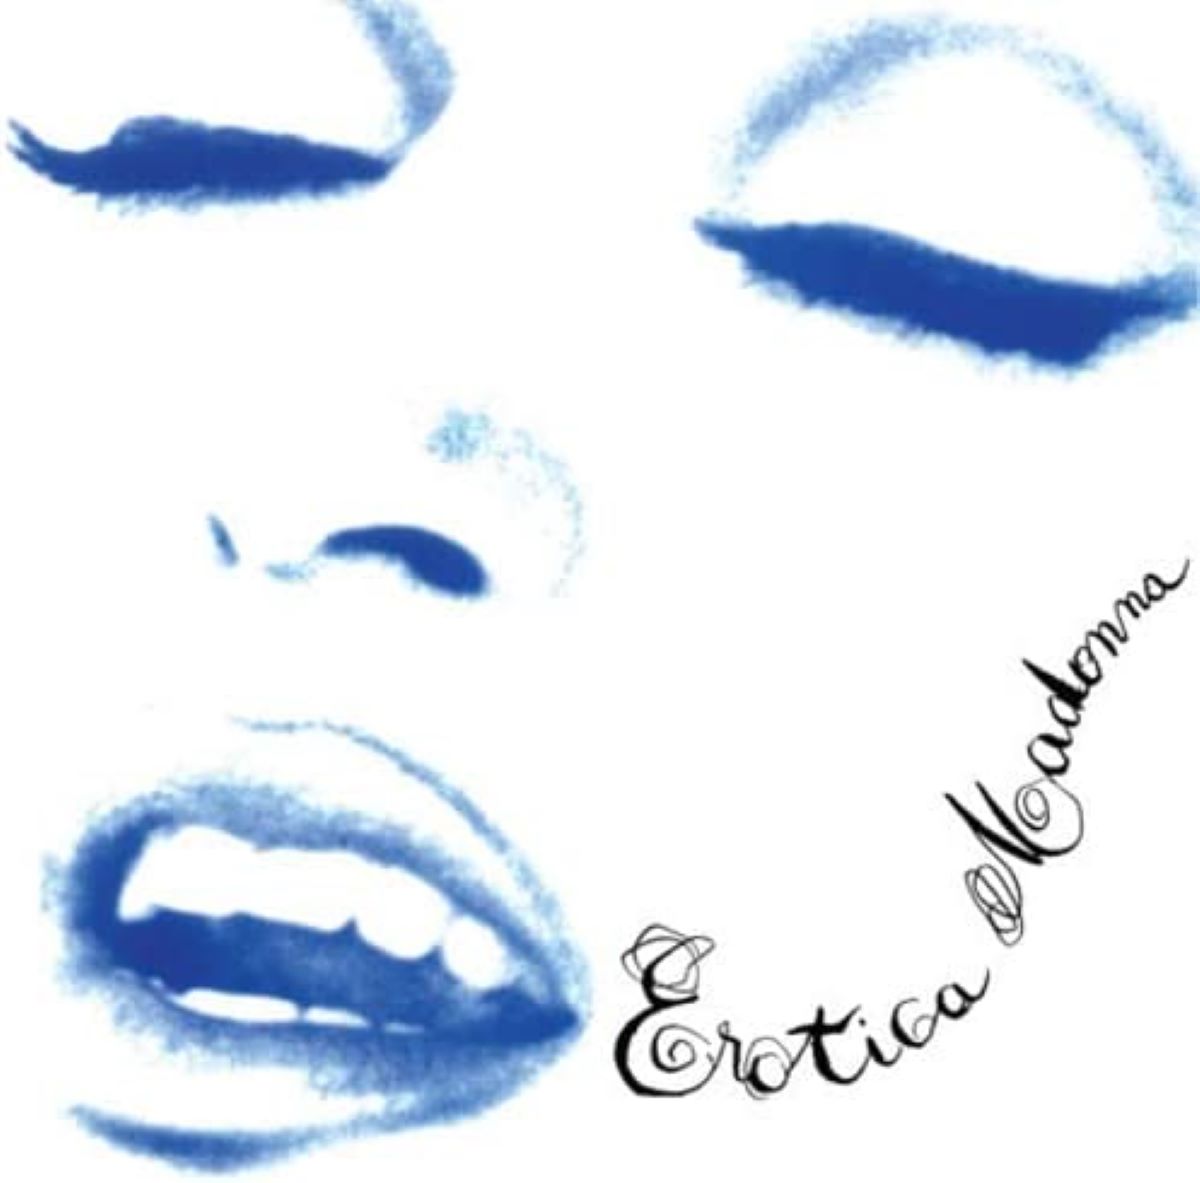 06 : Erotica (1992)